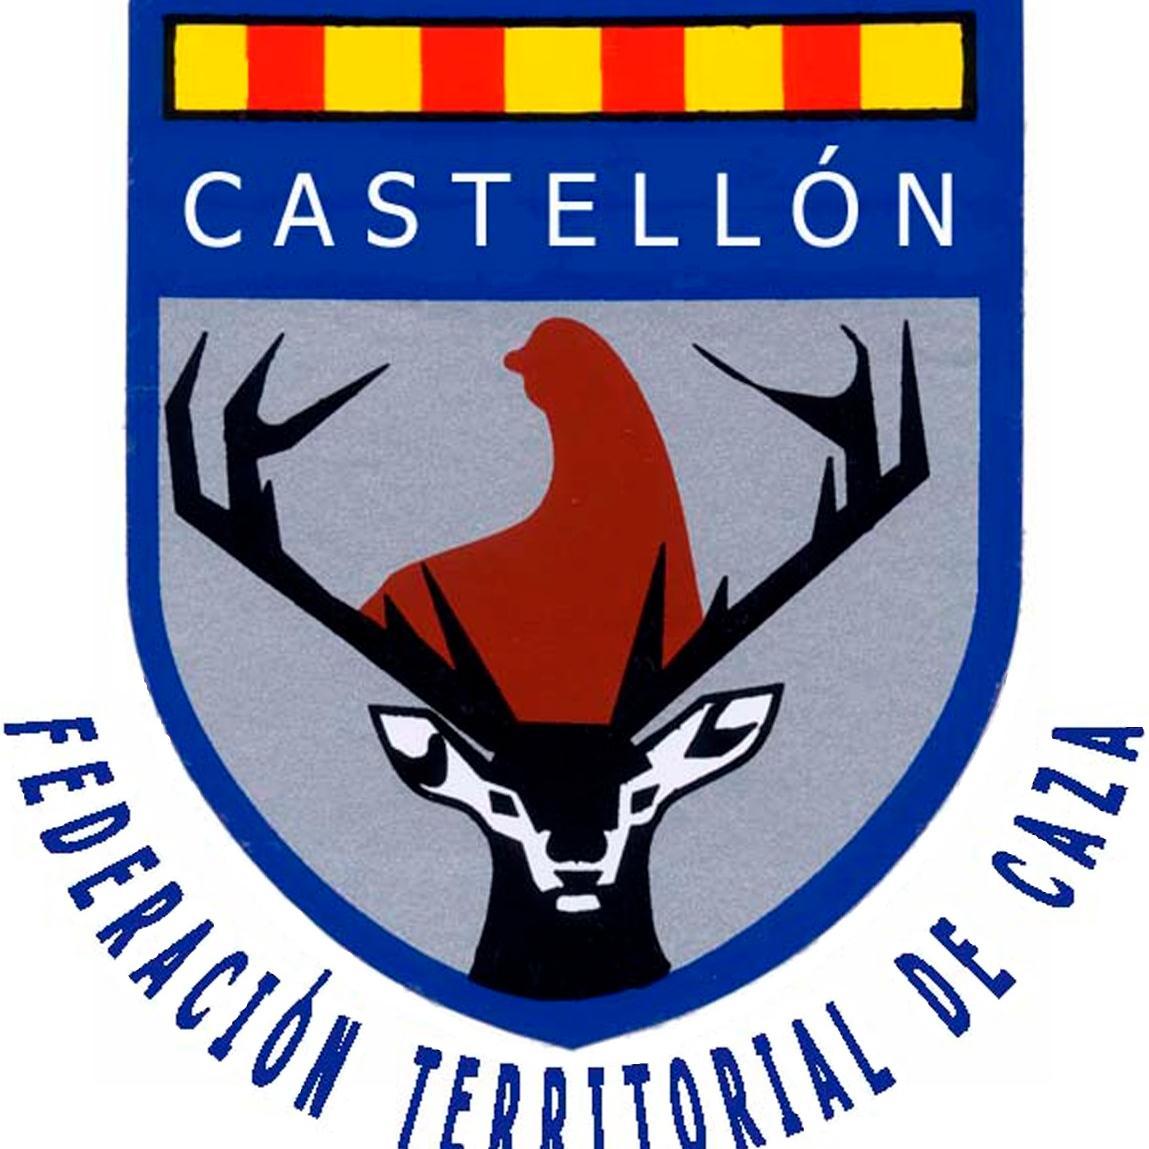 Twitter oficial de la Delegación Territorial de Caza de Castellón. Información sobre las acciones y eventos relacionados con la caza en nuestra provincia.